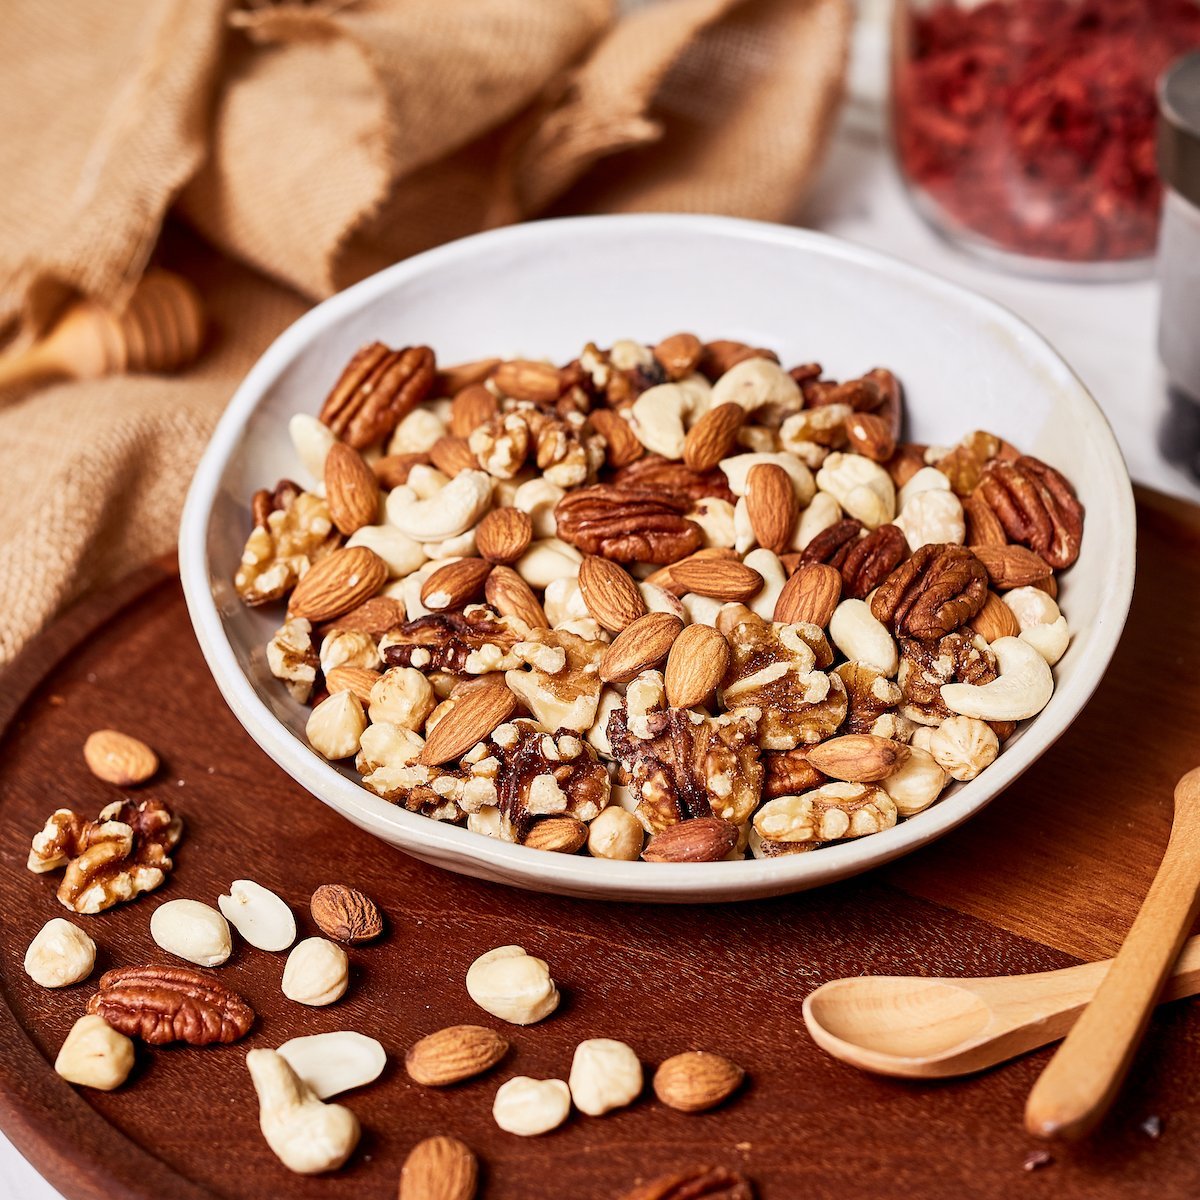 Amazin' Graze Healthy Nutty Protein Trail Mix